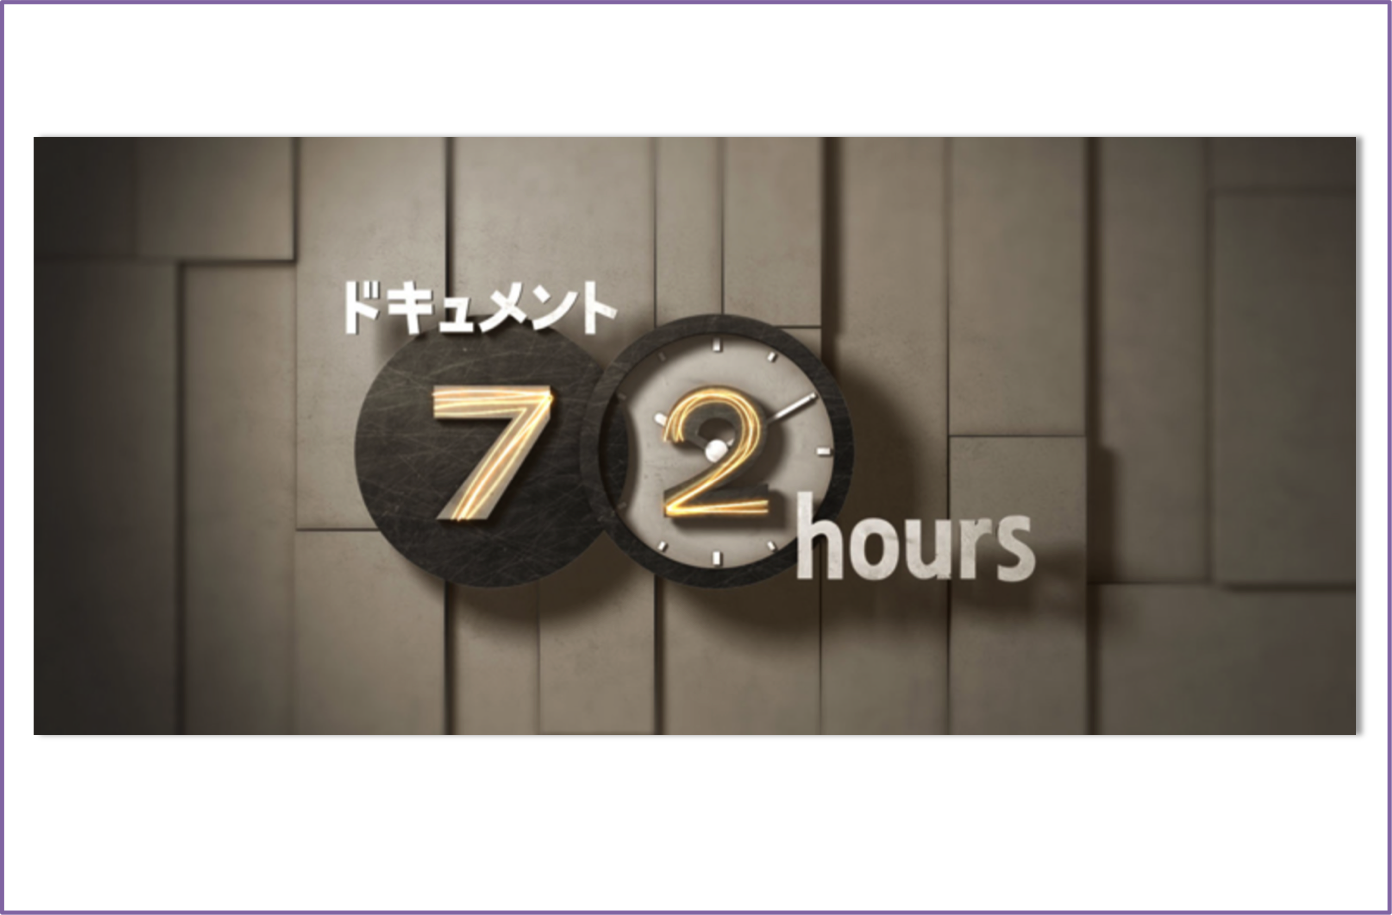 NHKドキュメント72時間を見て、何気ない日常の色々な人の色々な想いを感じる